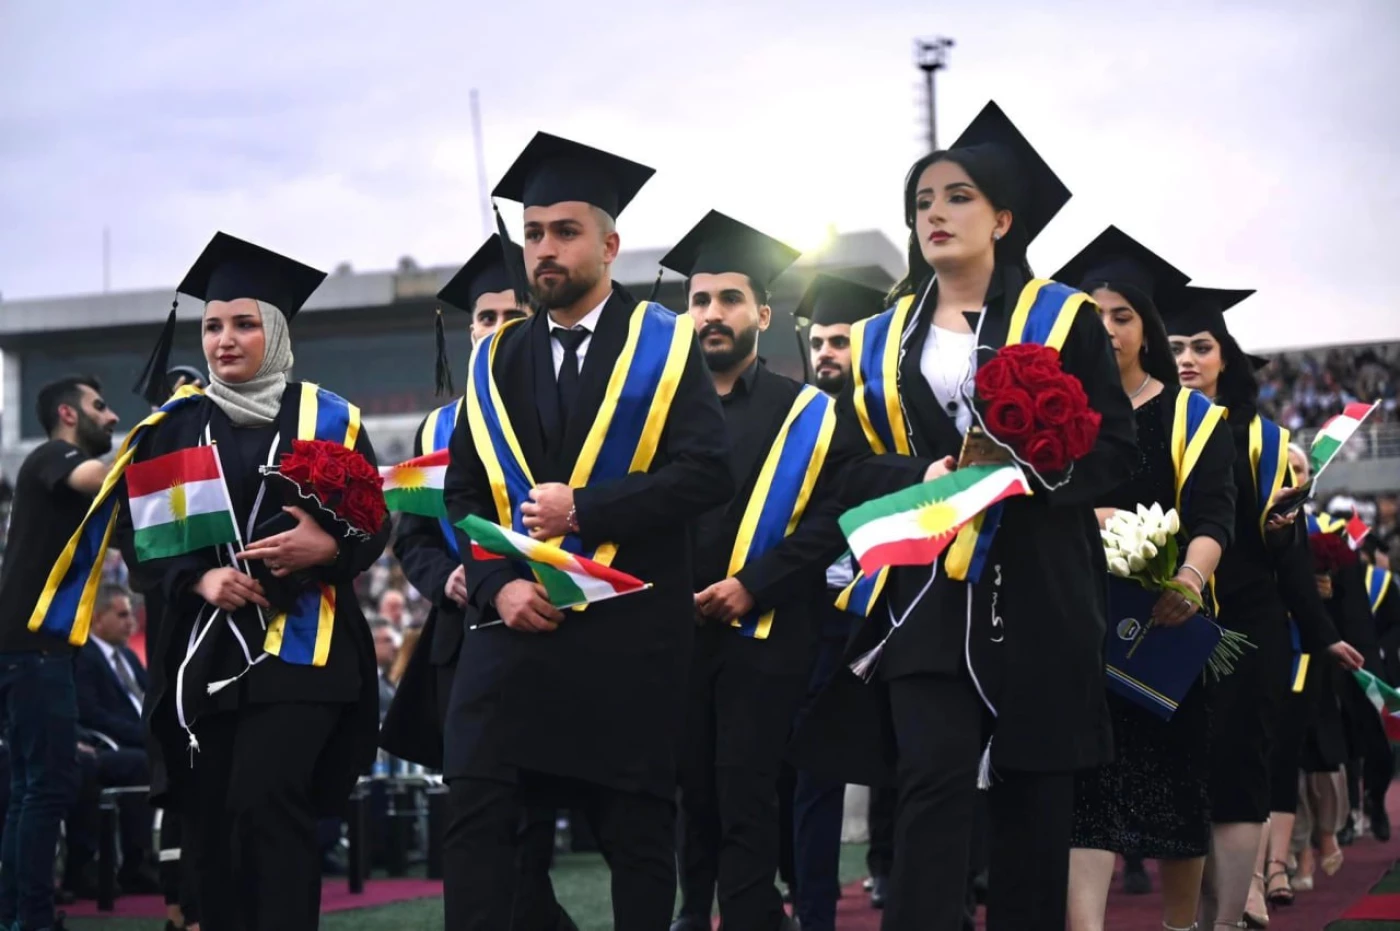 Kurdistan universities welcomeRead More